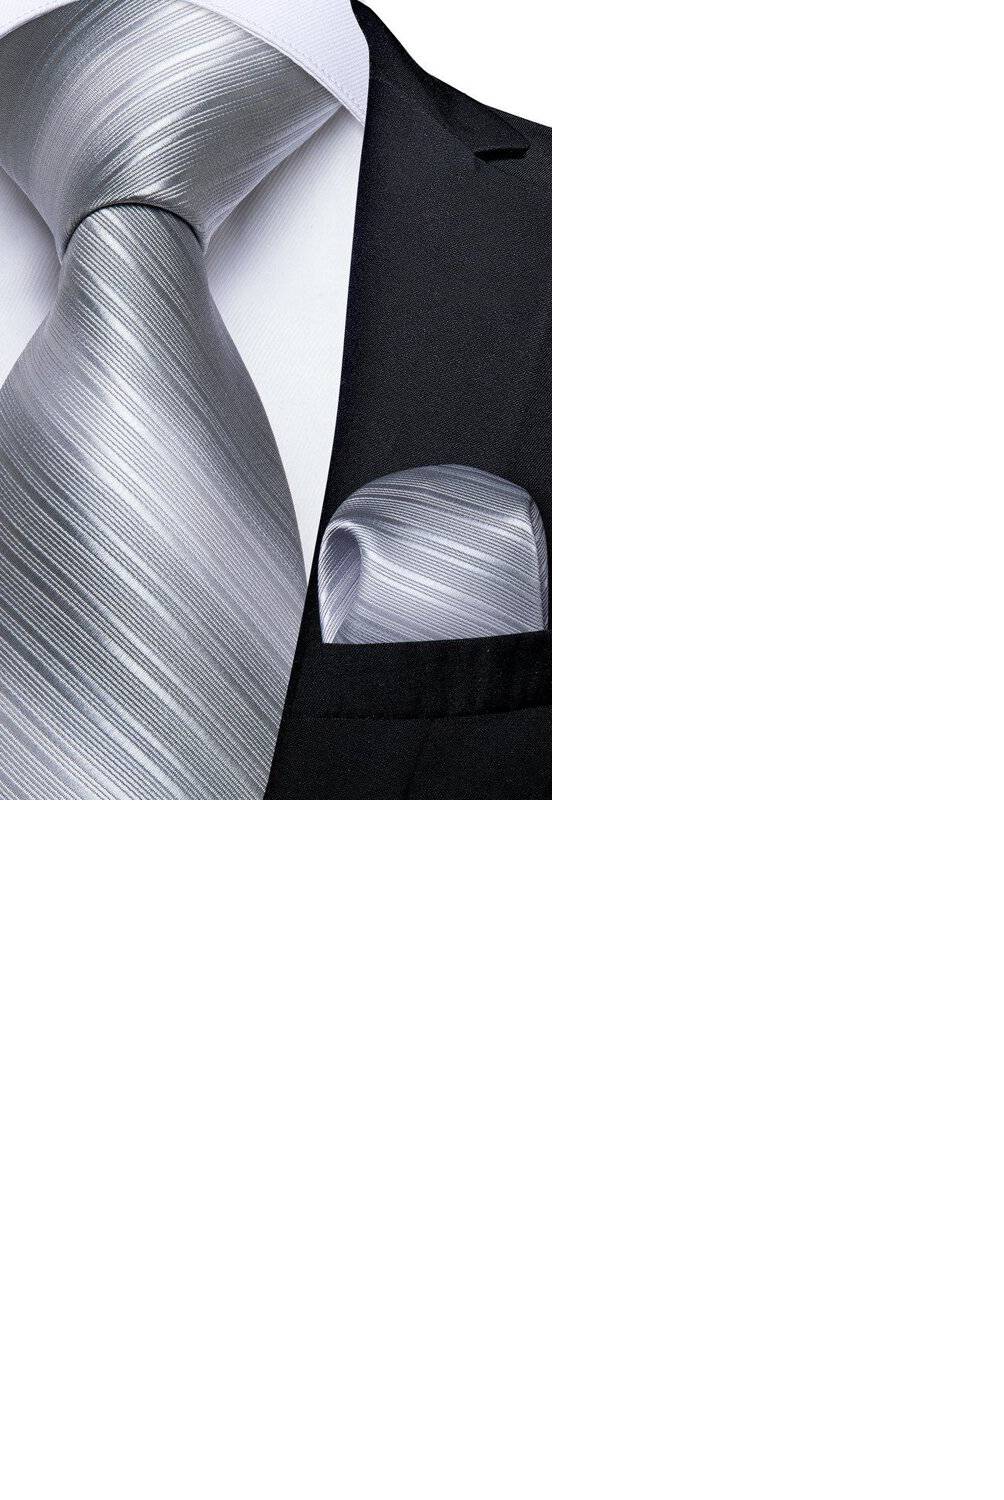 SONEC FASHION - Set Corbata Hombre Paño Colleras. Silver